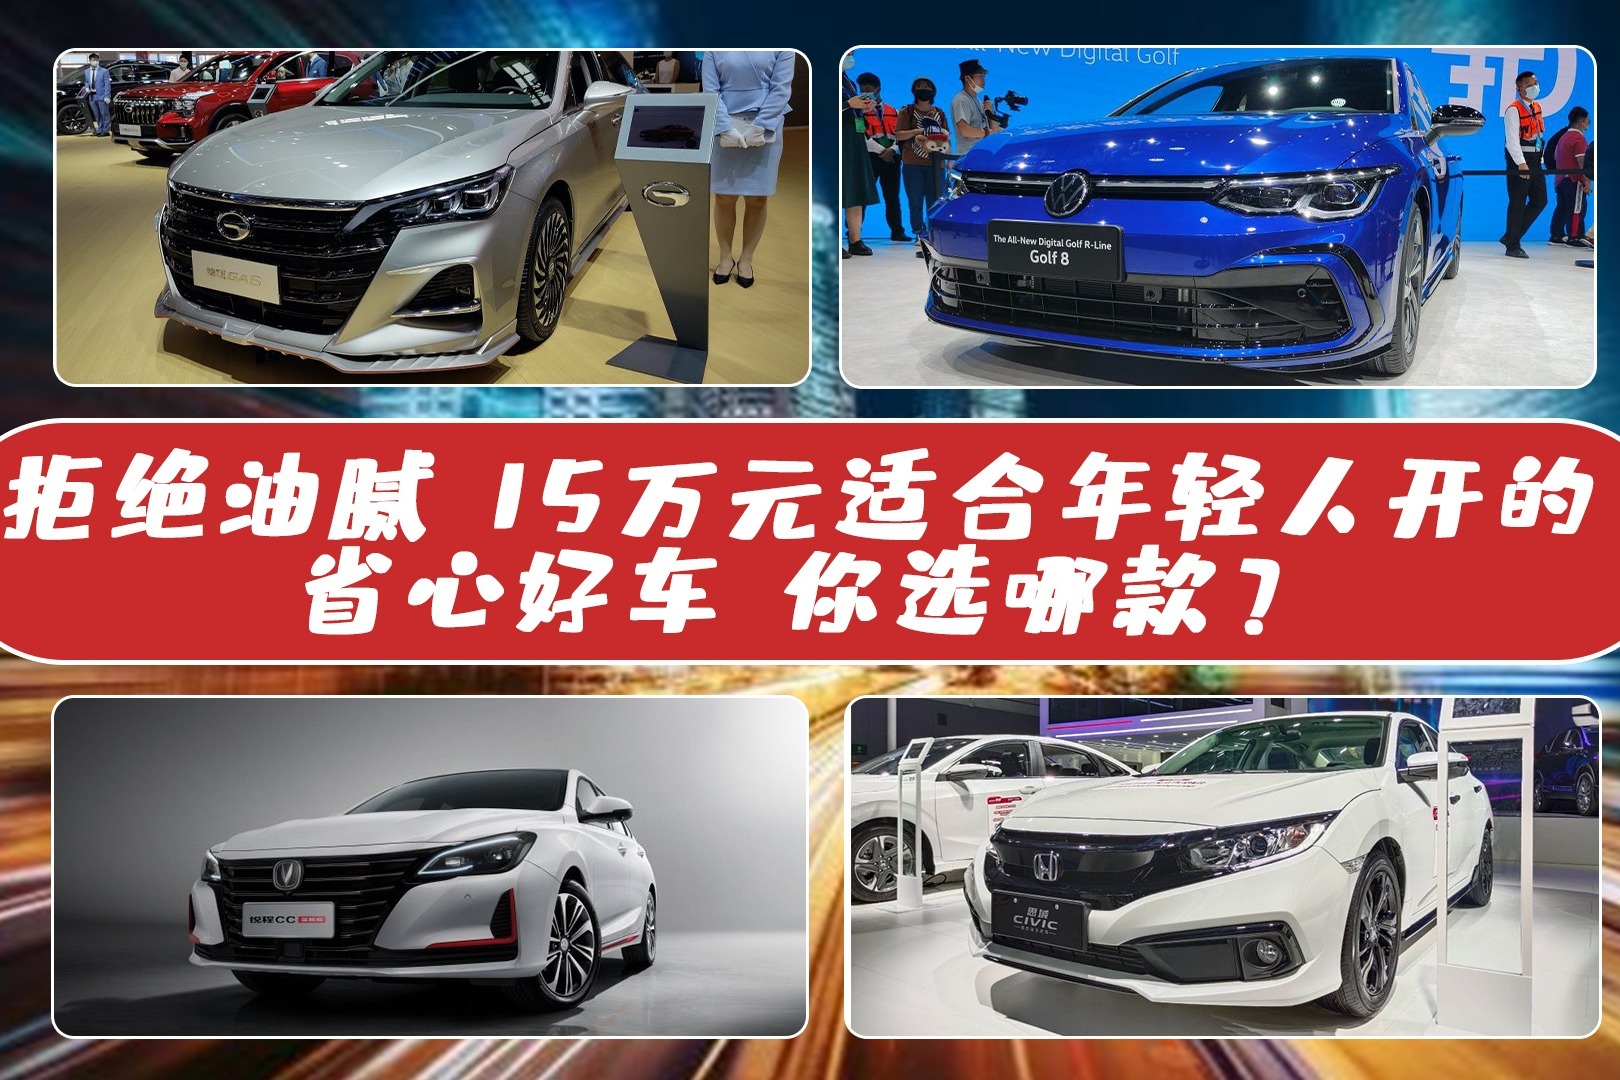 丰田哪款车性价比最高 10万以下最好的合资车排行推荐 - 汽车 - 教程之家